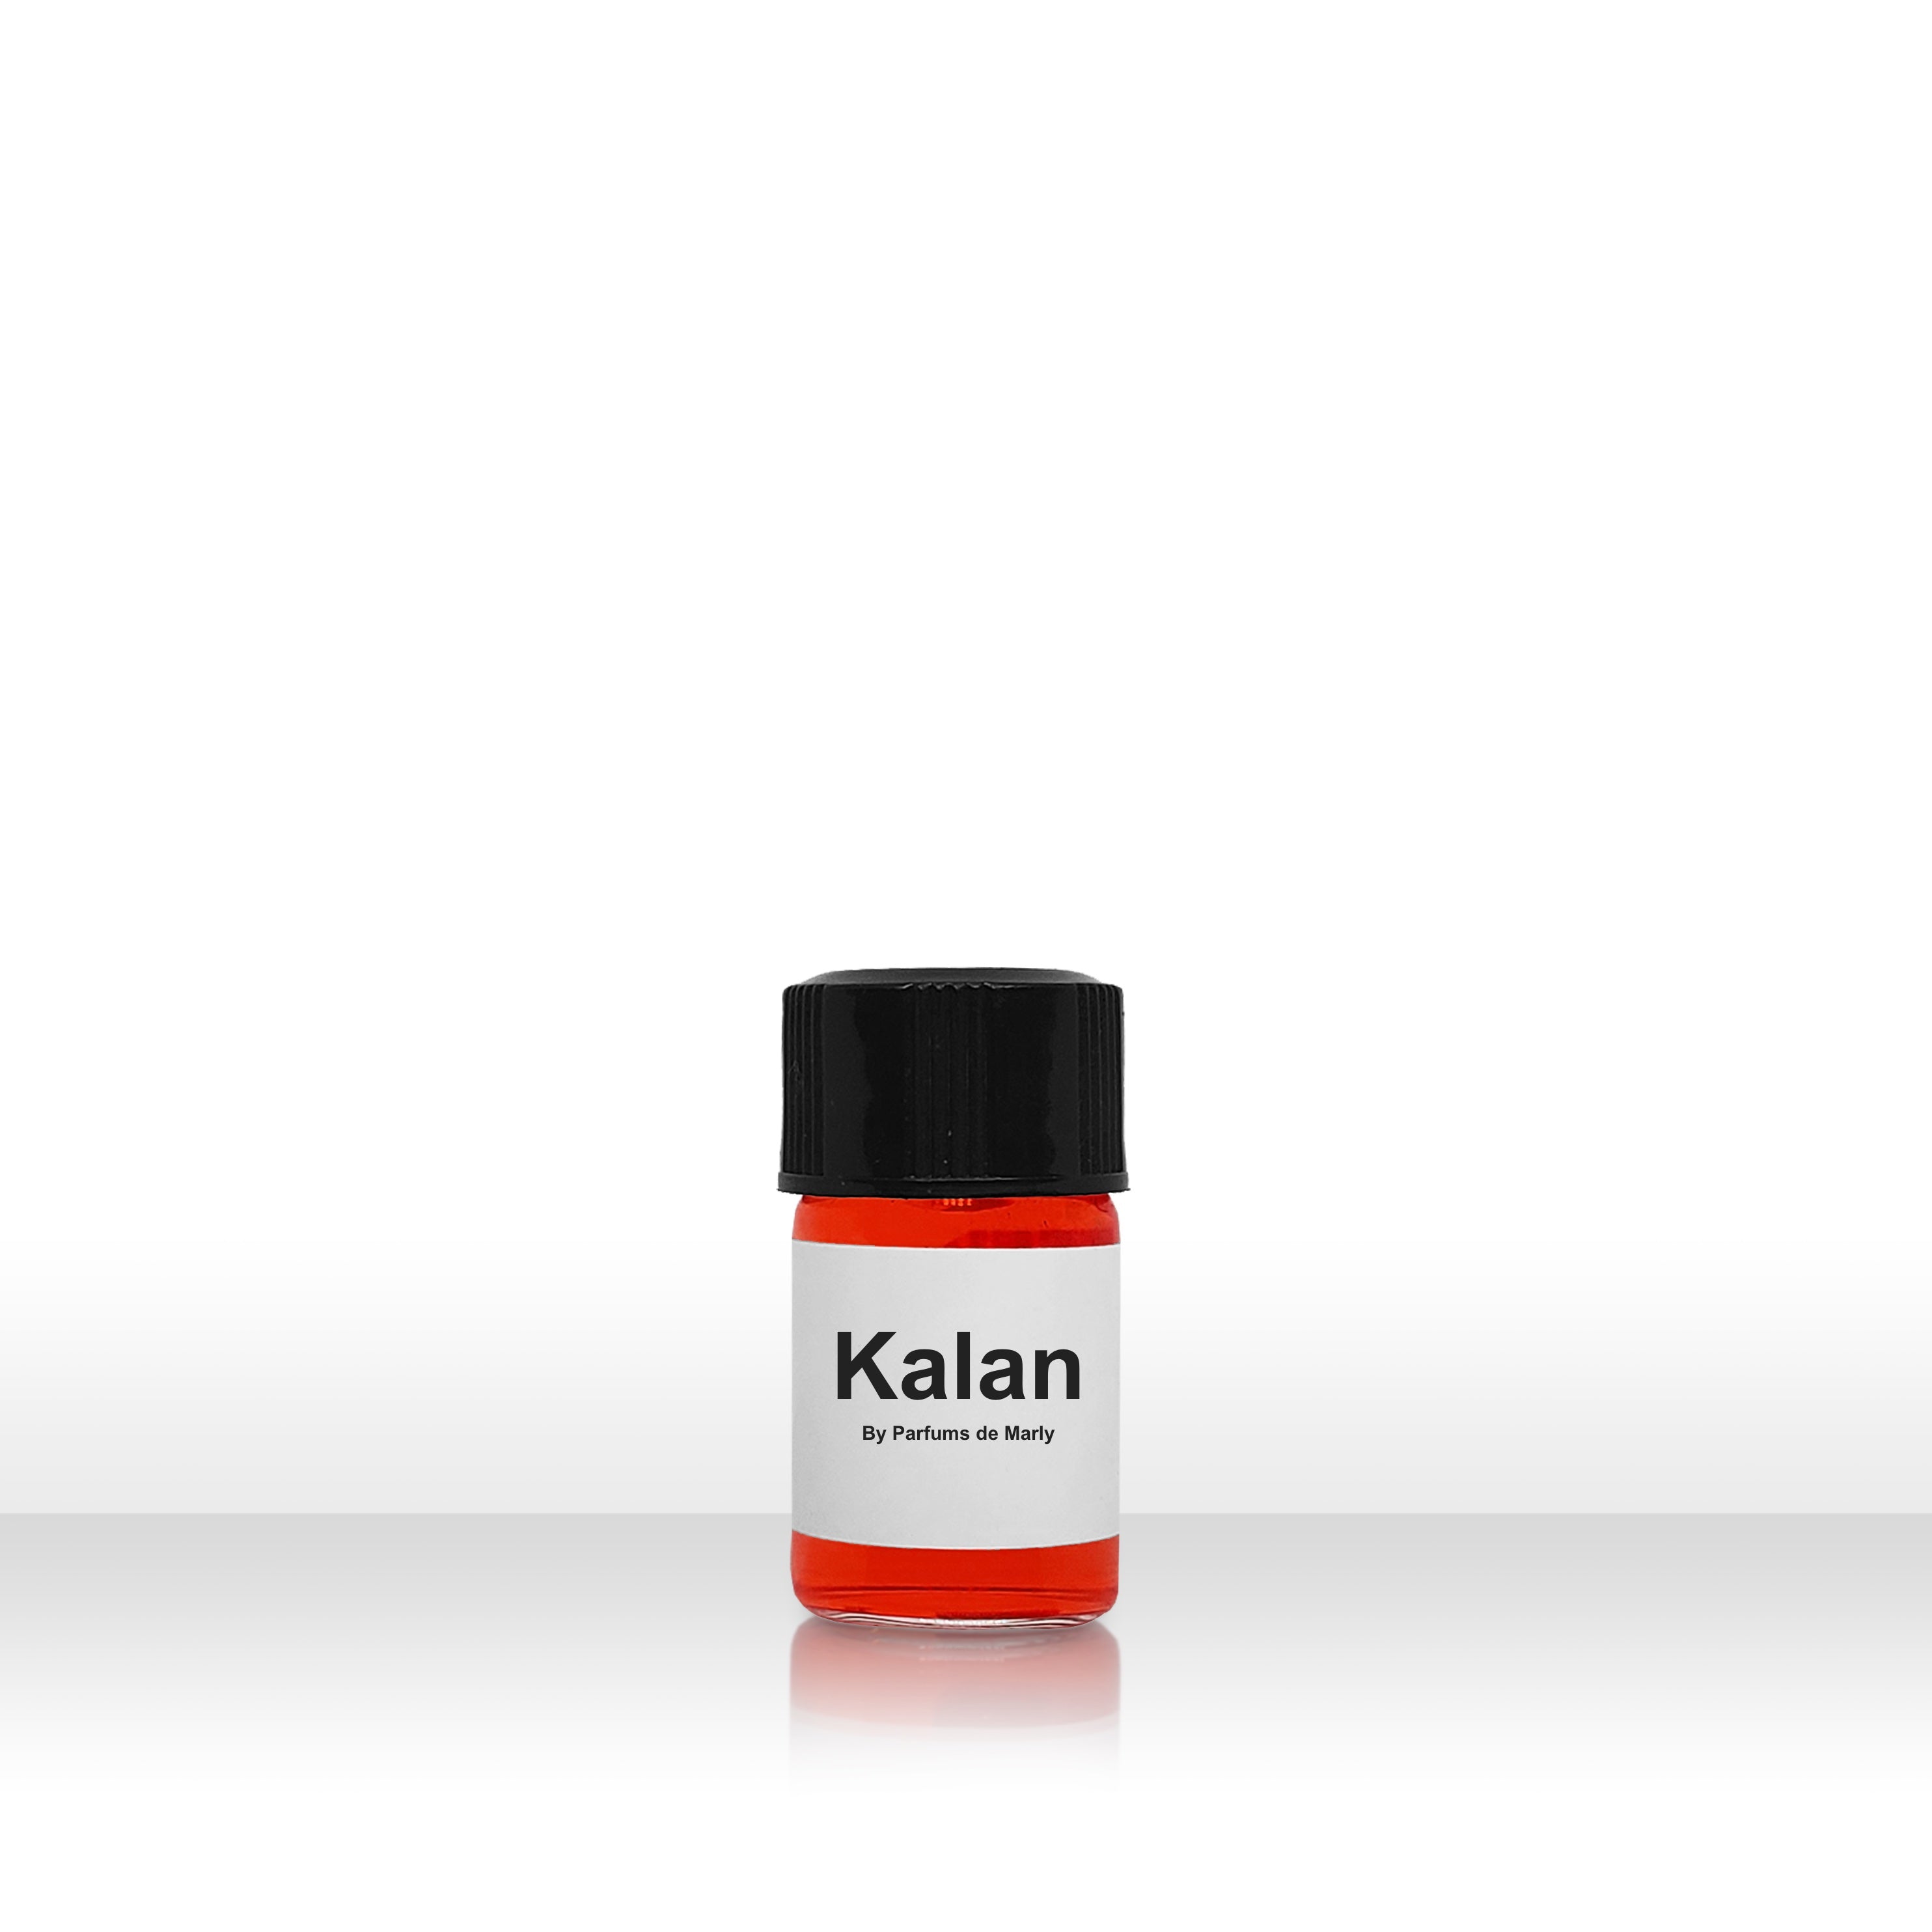 Compare Aroma to Kalan®